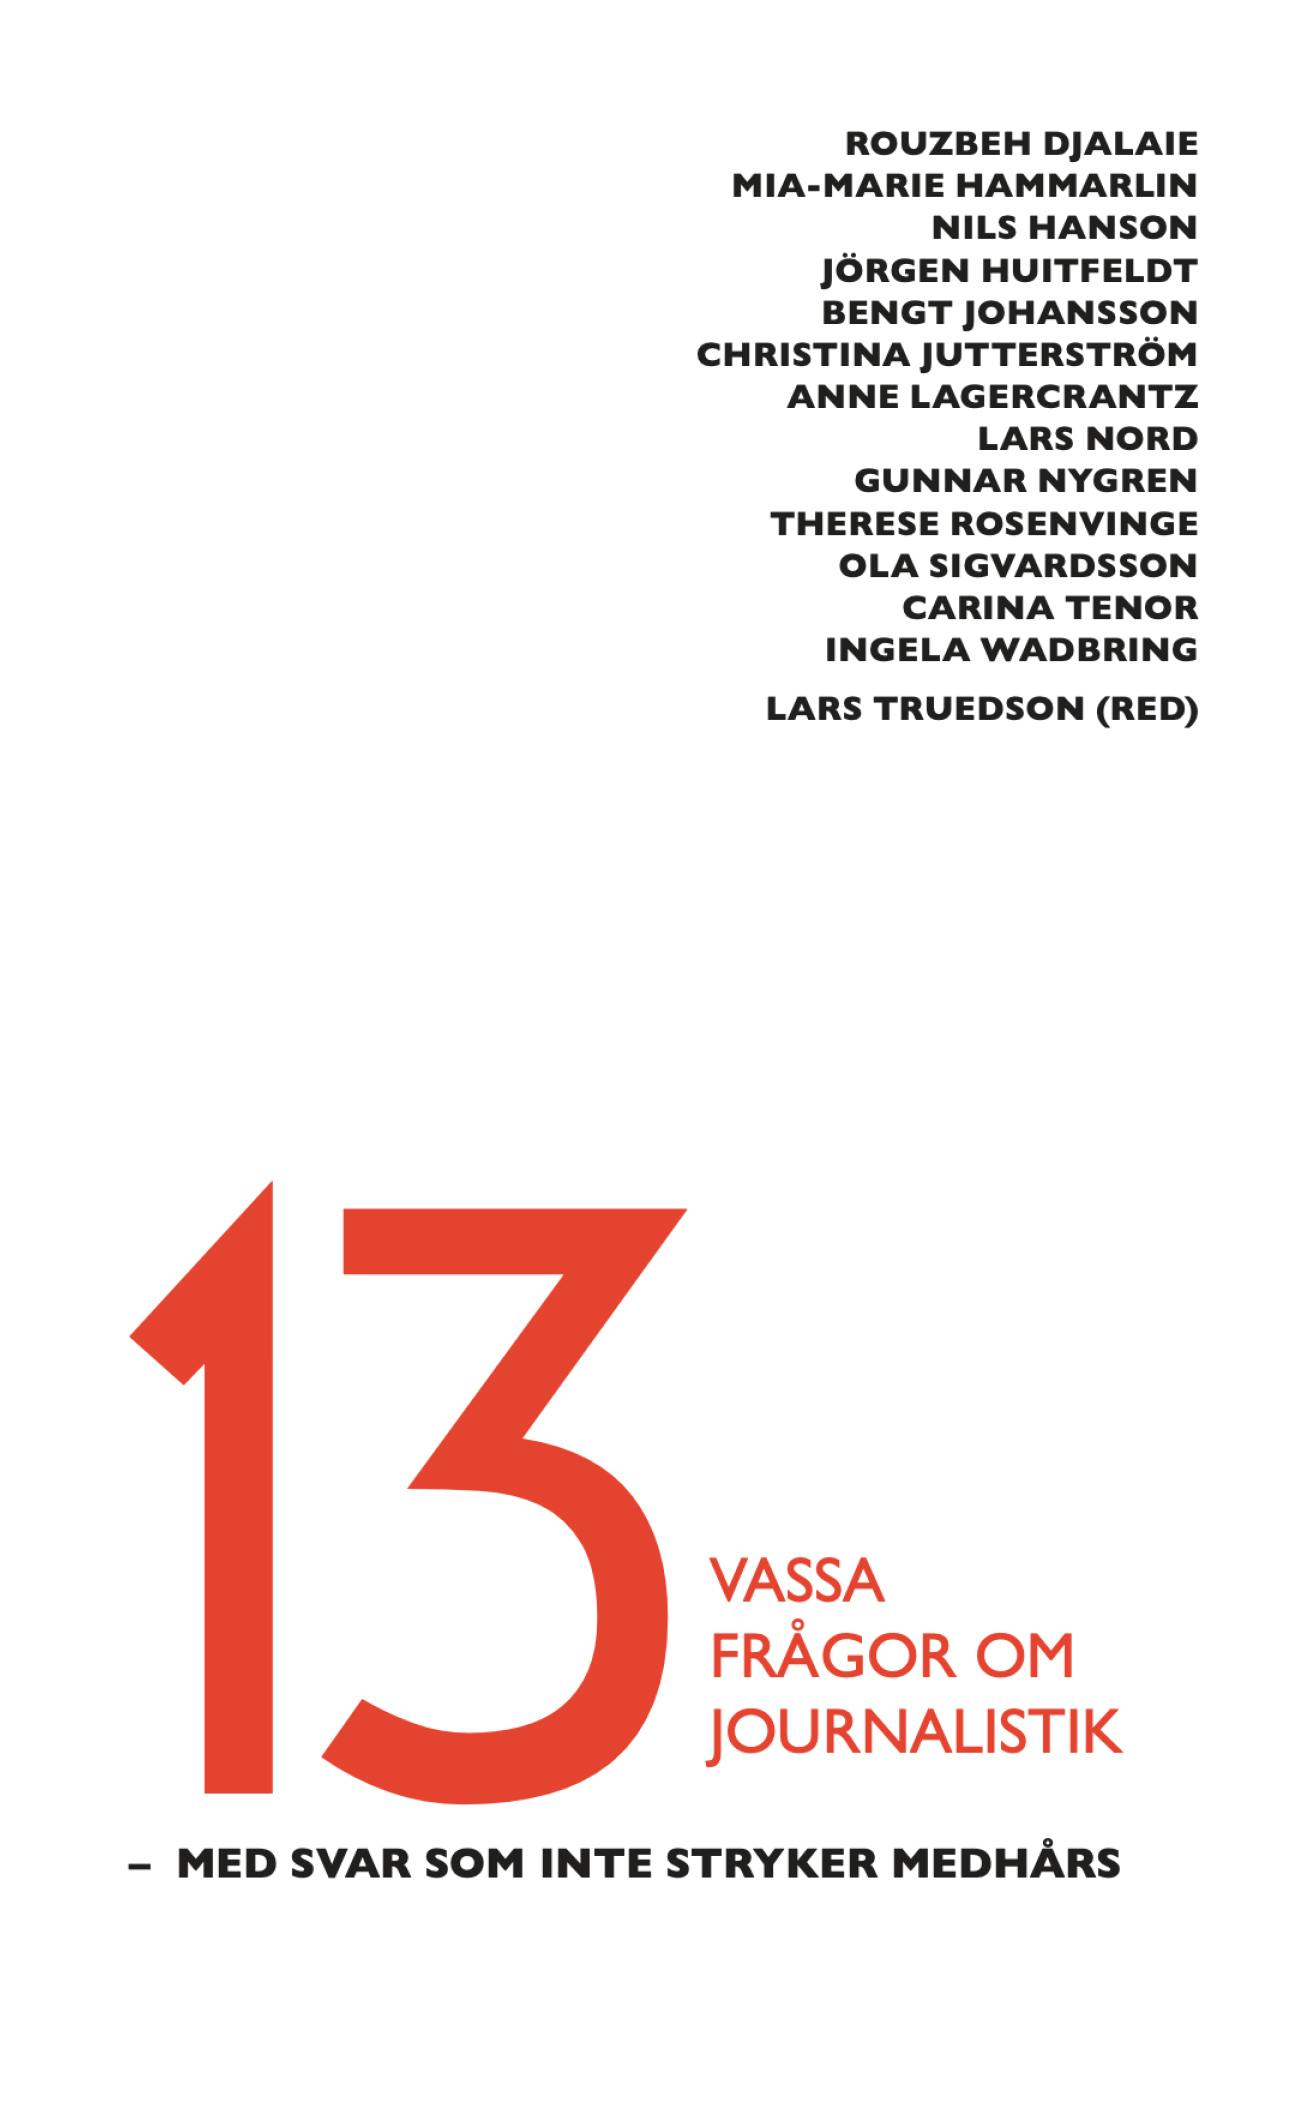 Report: 13 vassa frågor om journalistik cover image